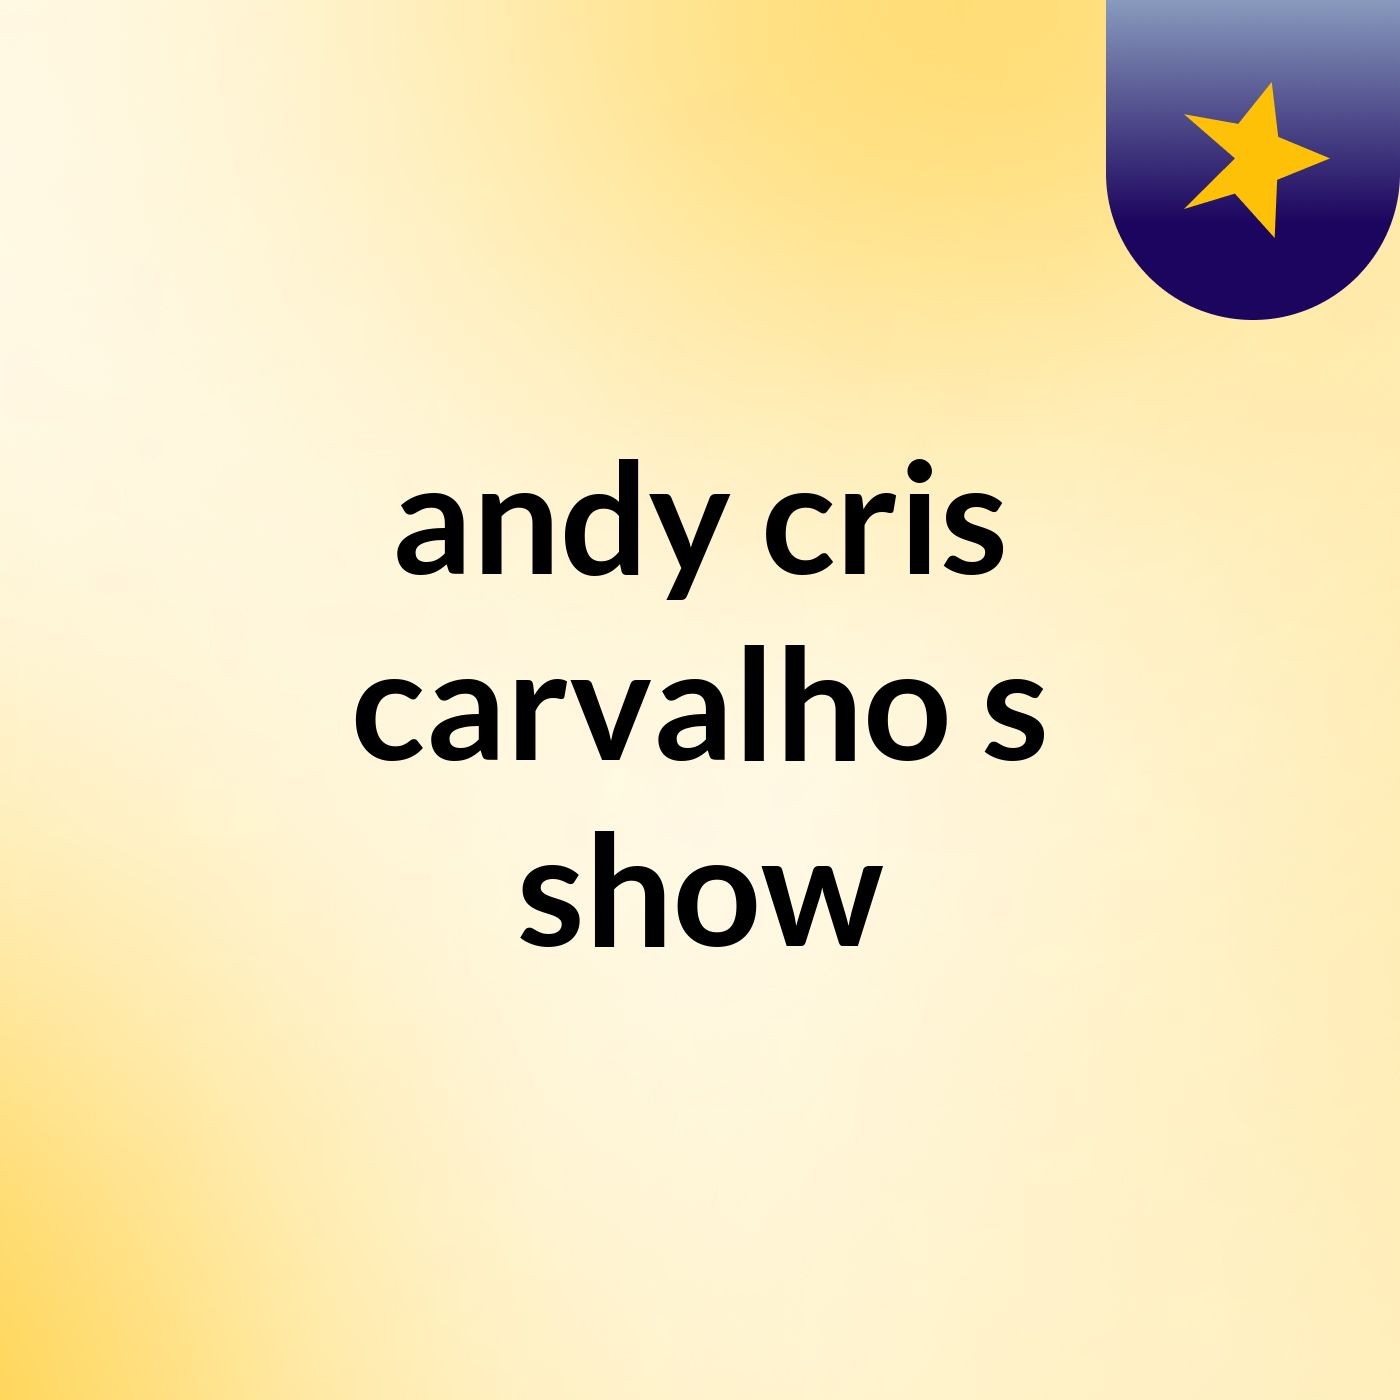 andy cris carvalho's show